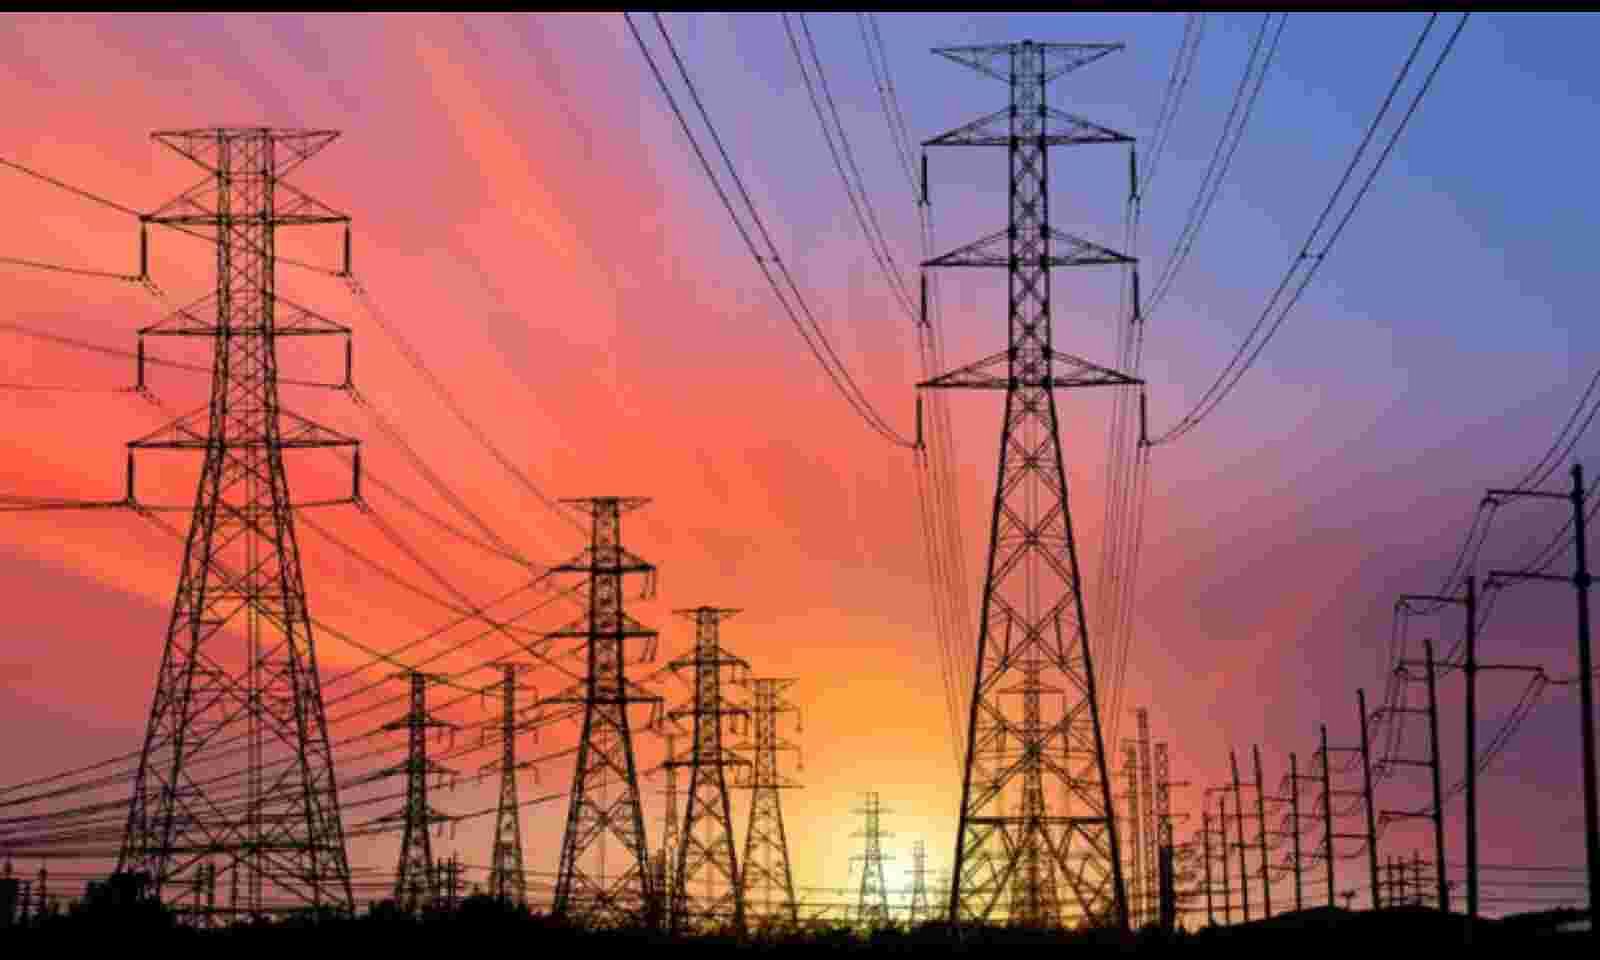 Electricity (Amendment) Bill 2020 "EMPOWER IAS"